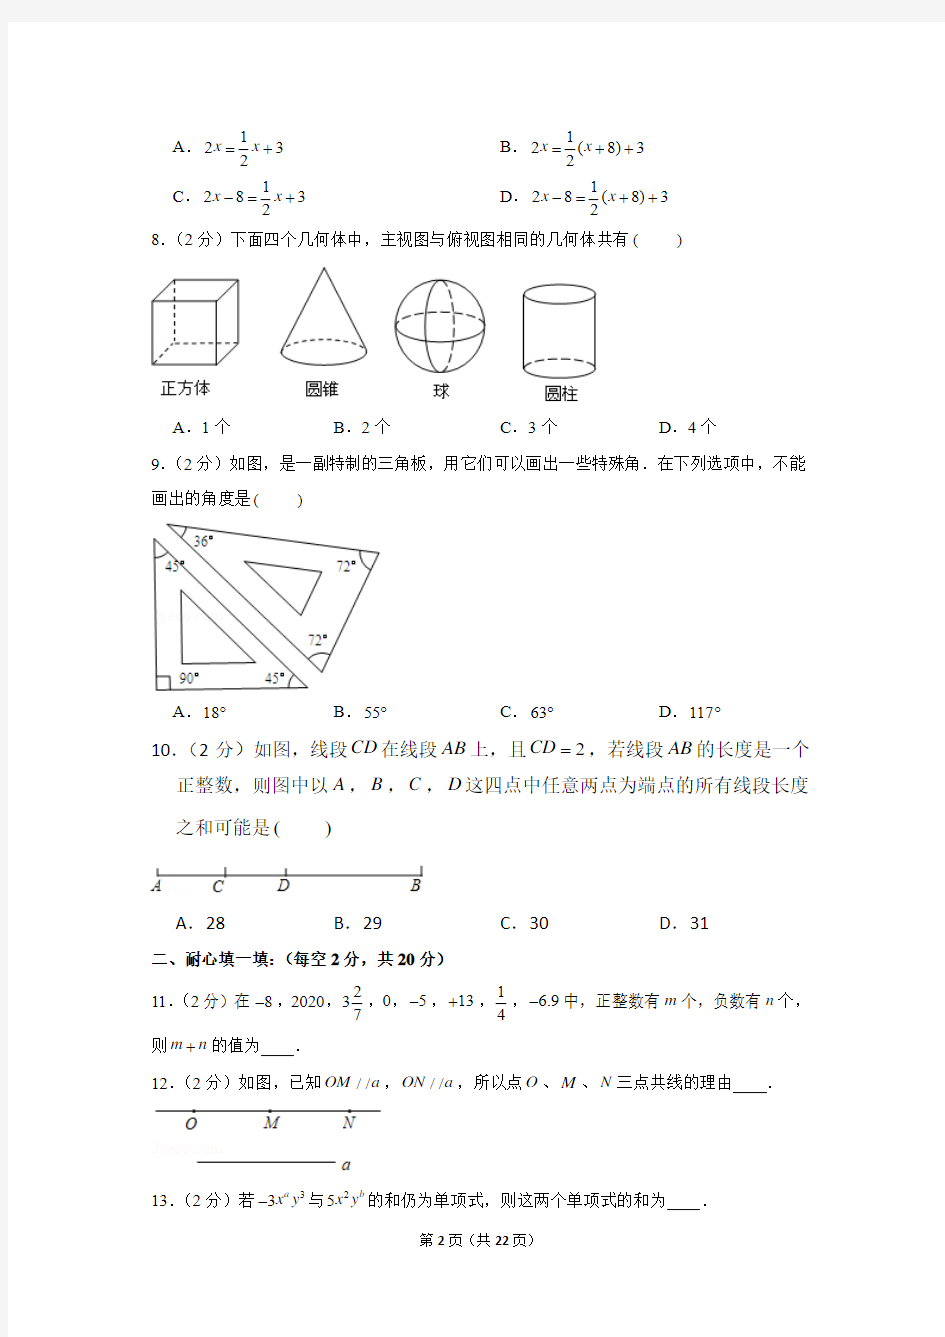 2019-2020学年江苏省南京外国语学校七年级(上)期末数学试卷